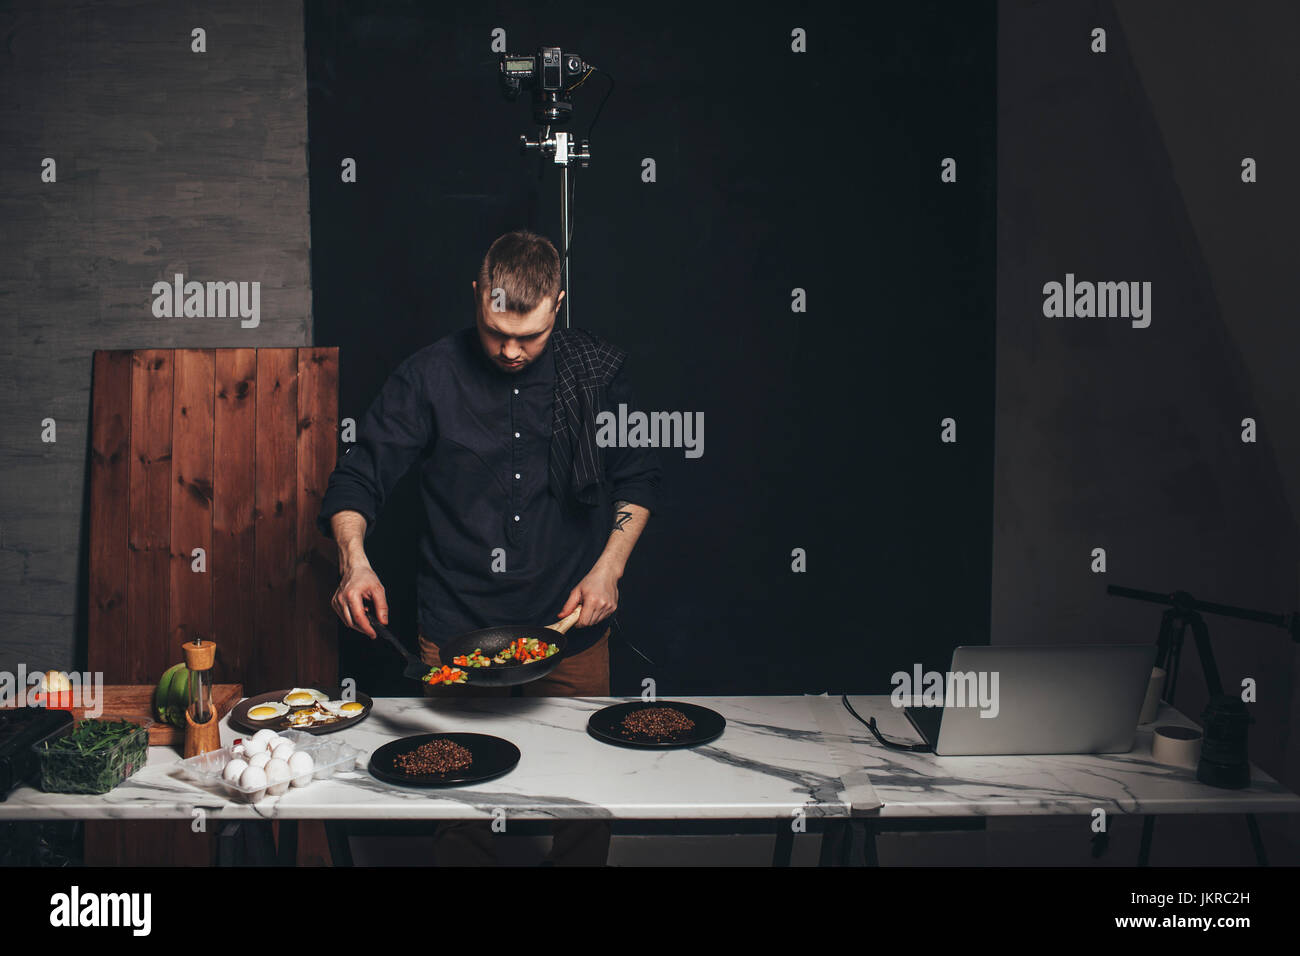 Lo Chef disponendo il cibo sul bancone di marmo contro sfondo allo studio Foto Stock